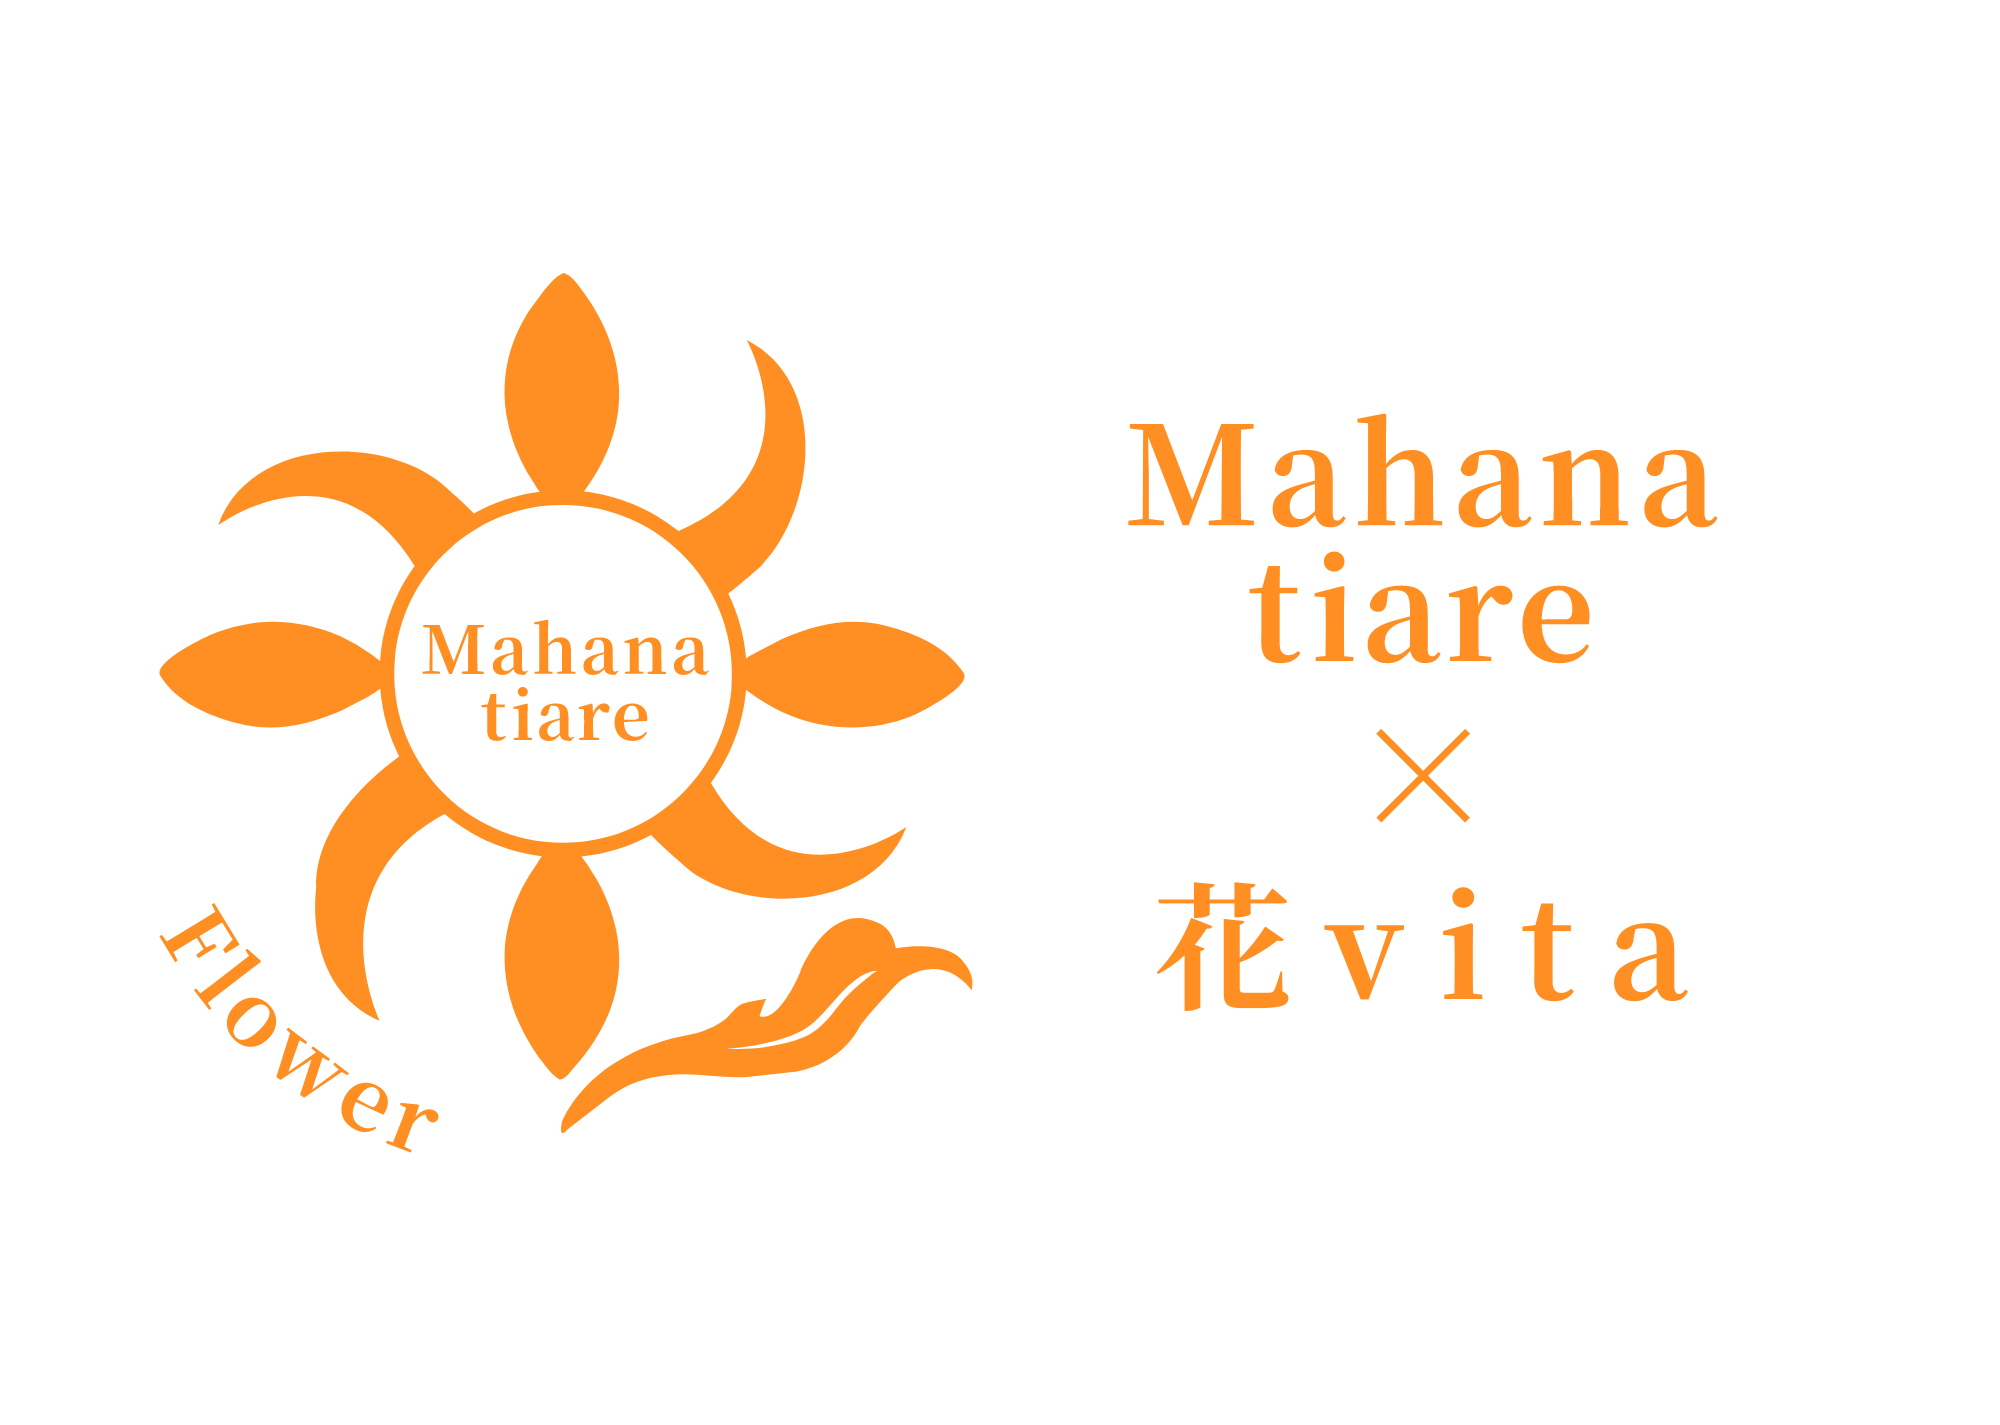 Mahanatiare